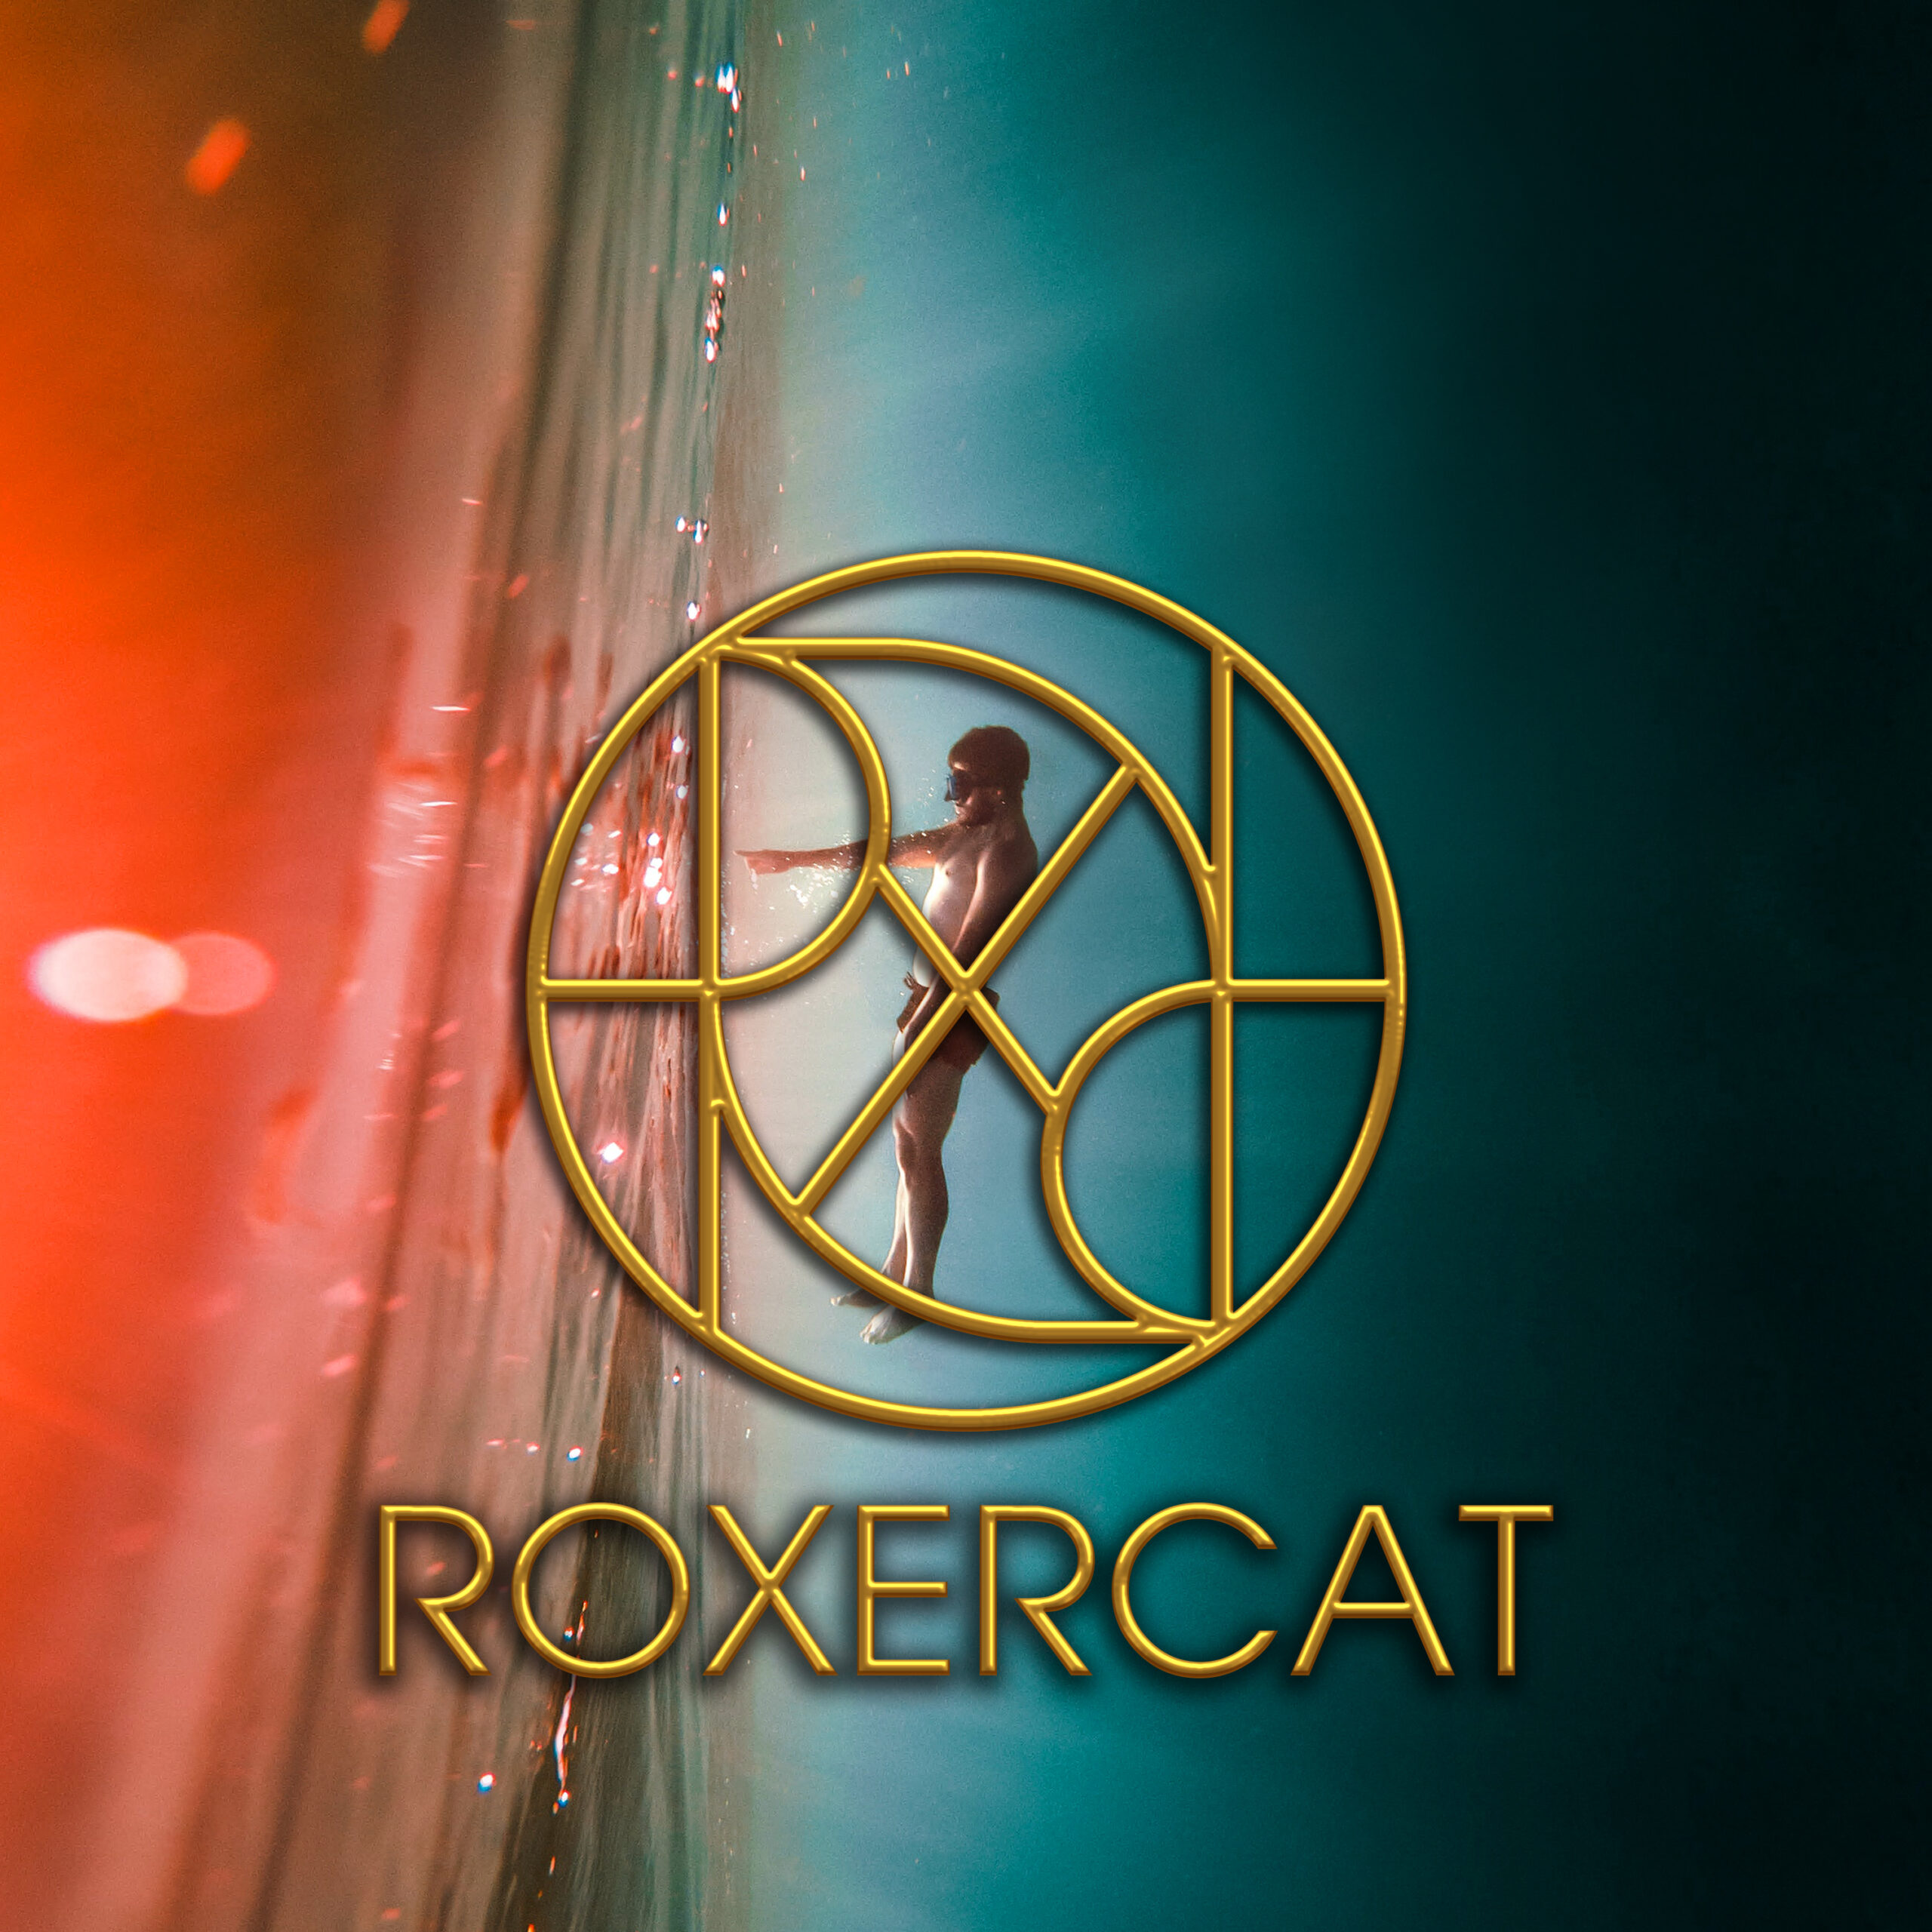 Roxercat